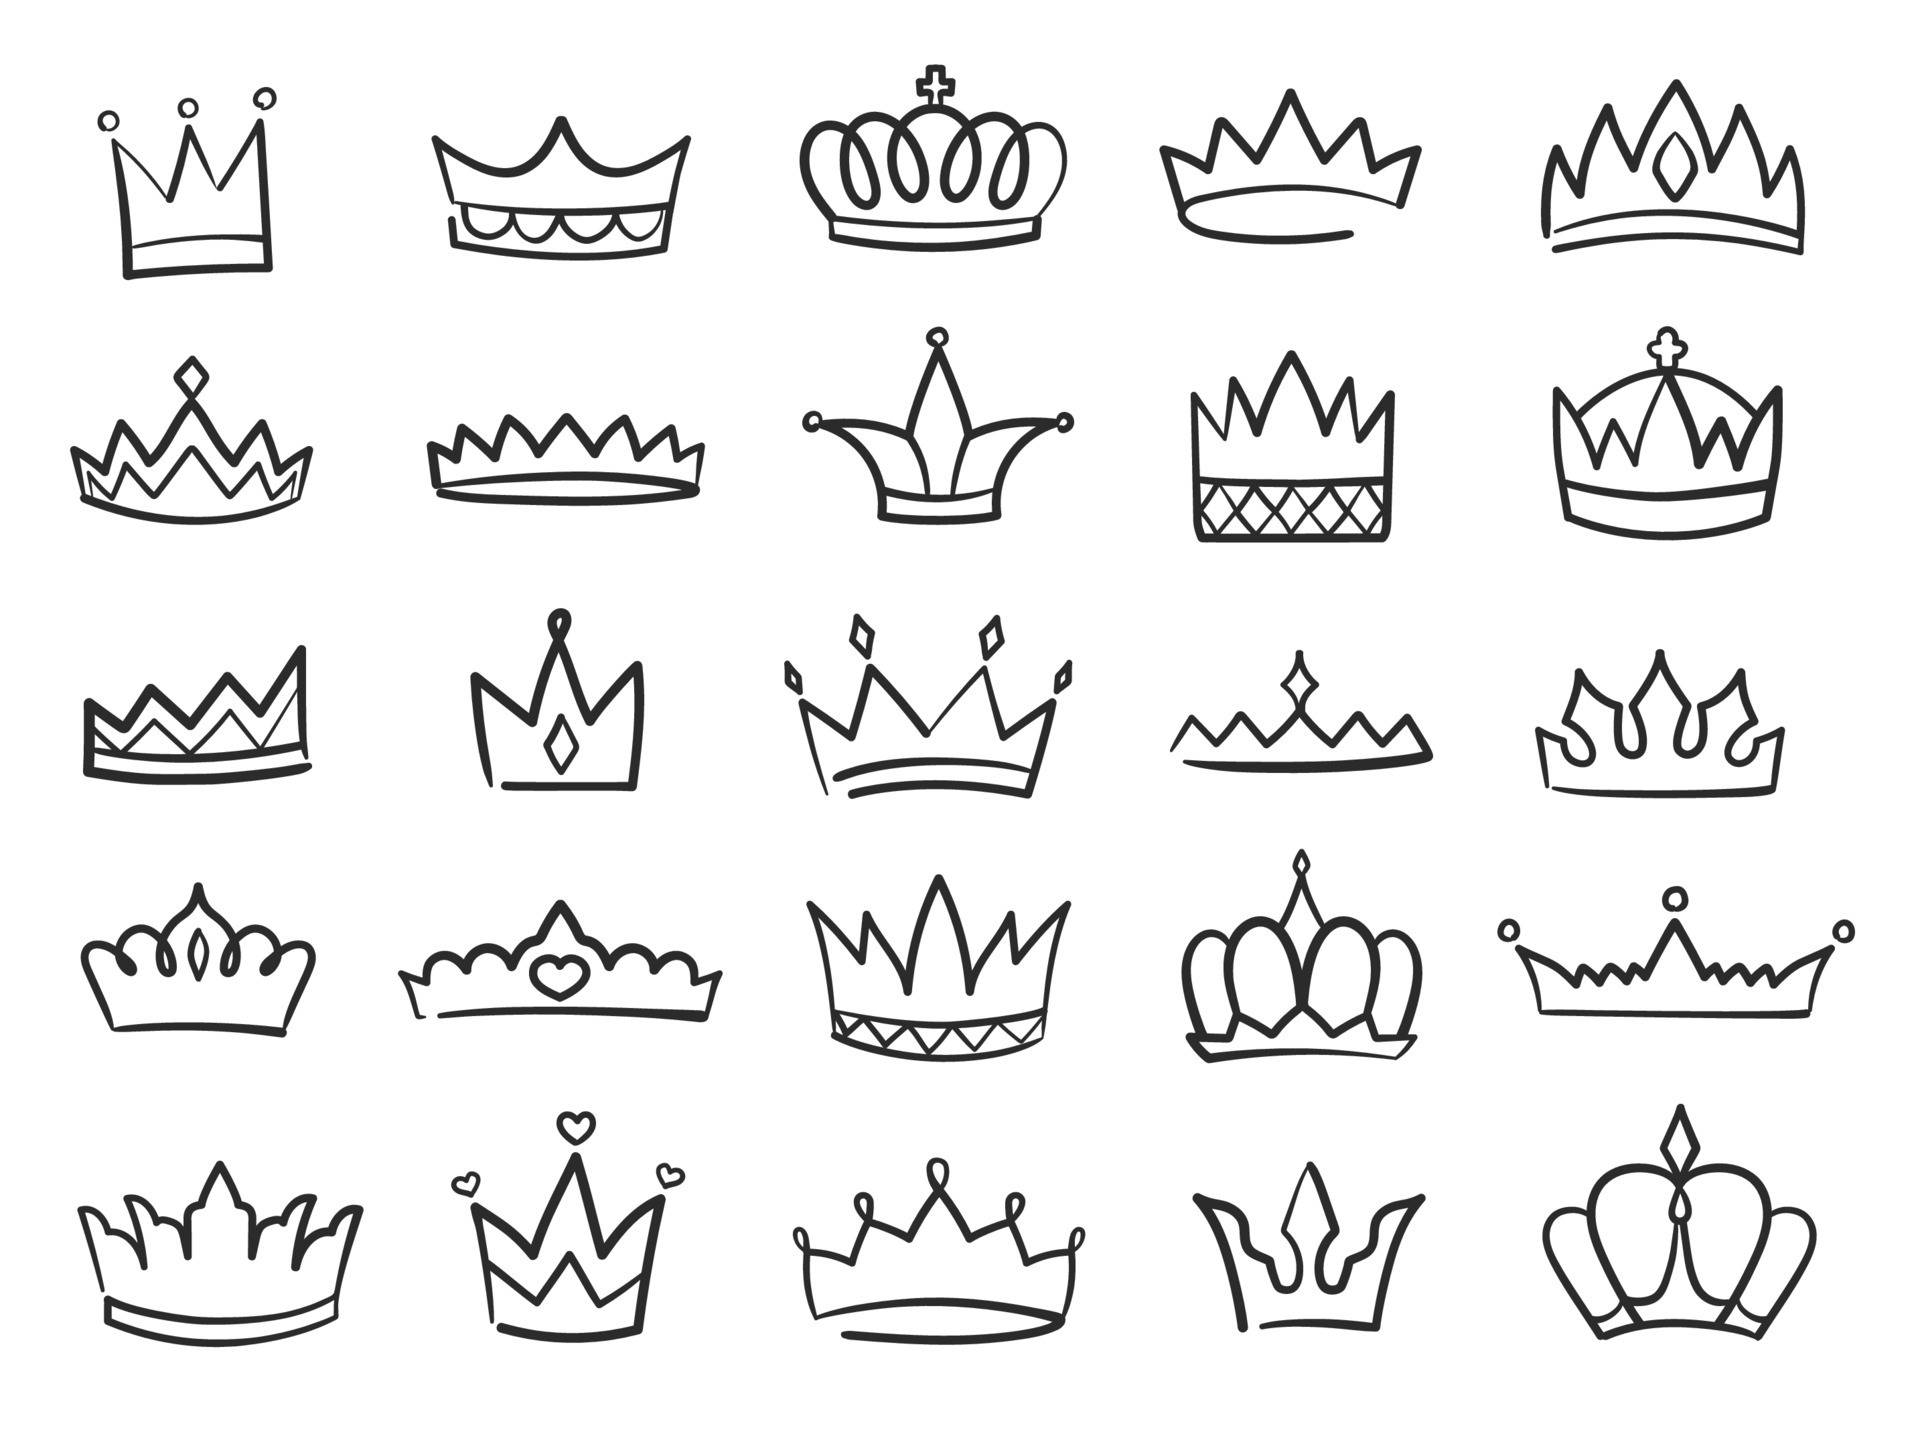 символы короны для пубг фото 86